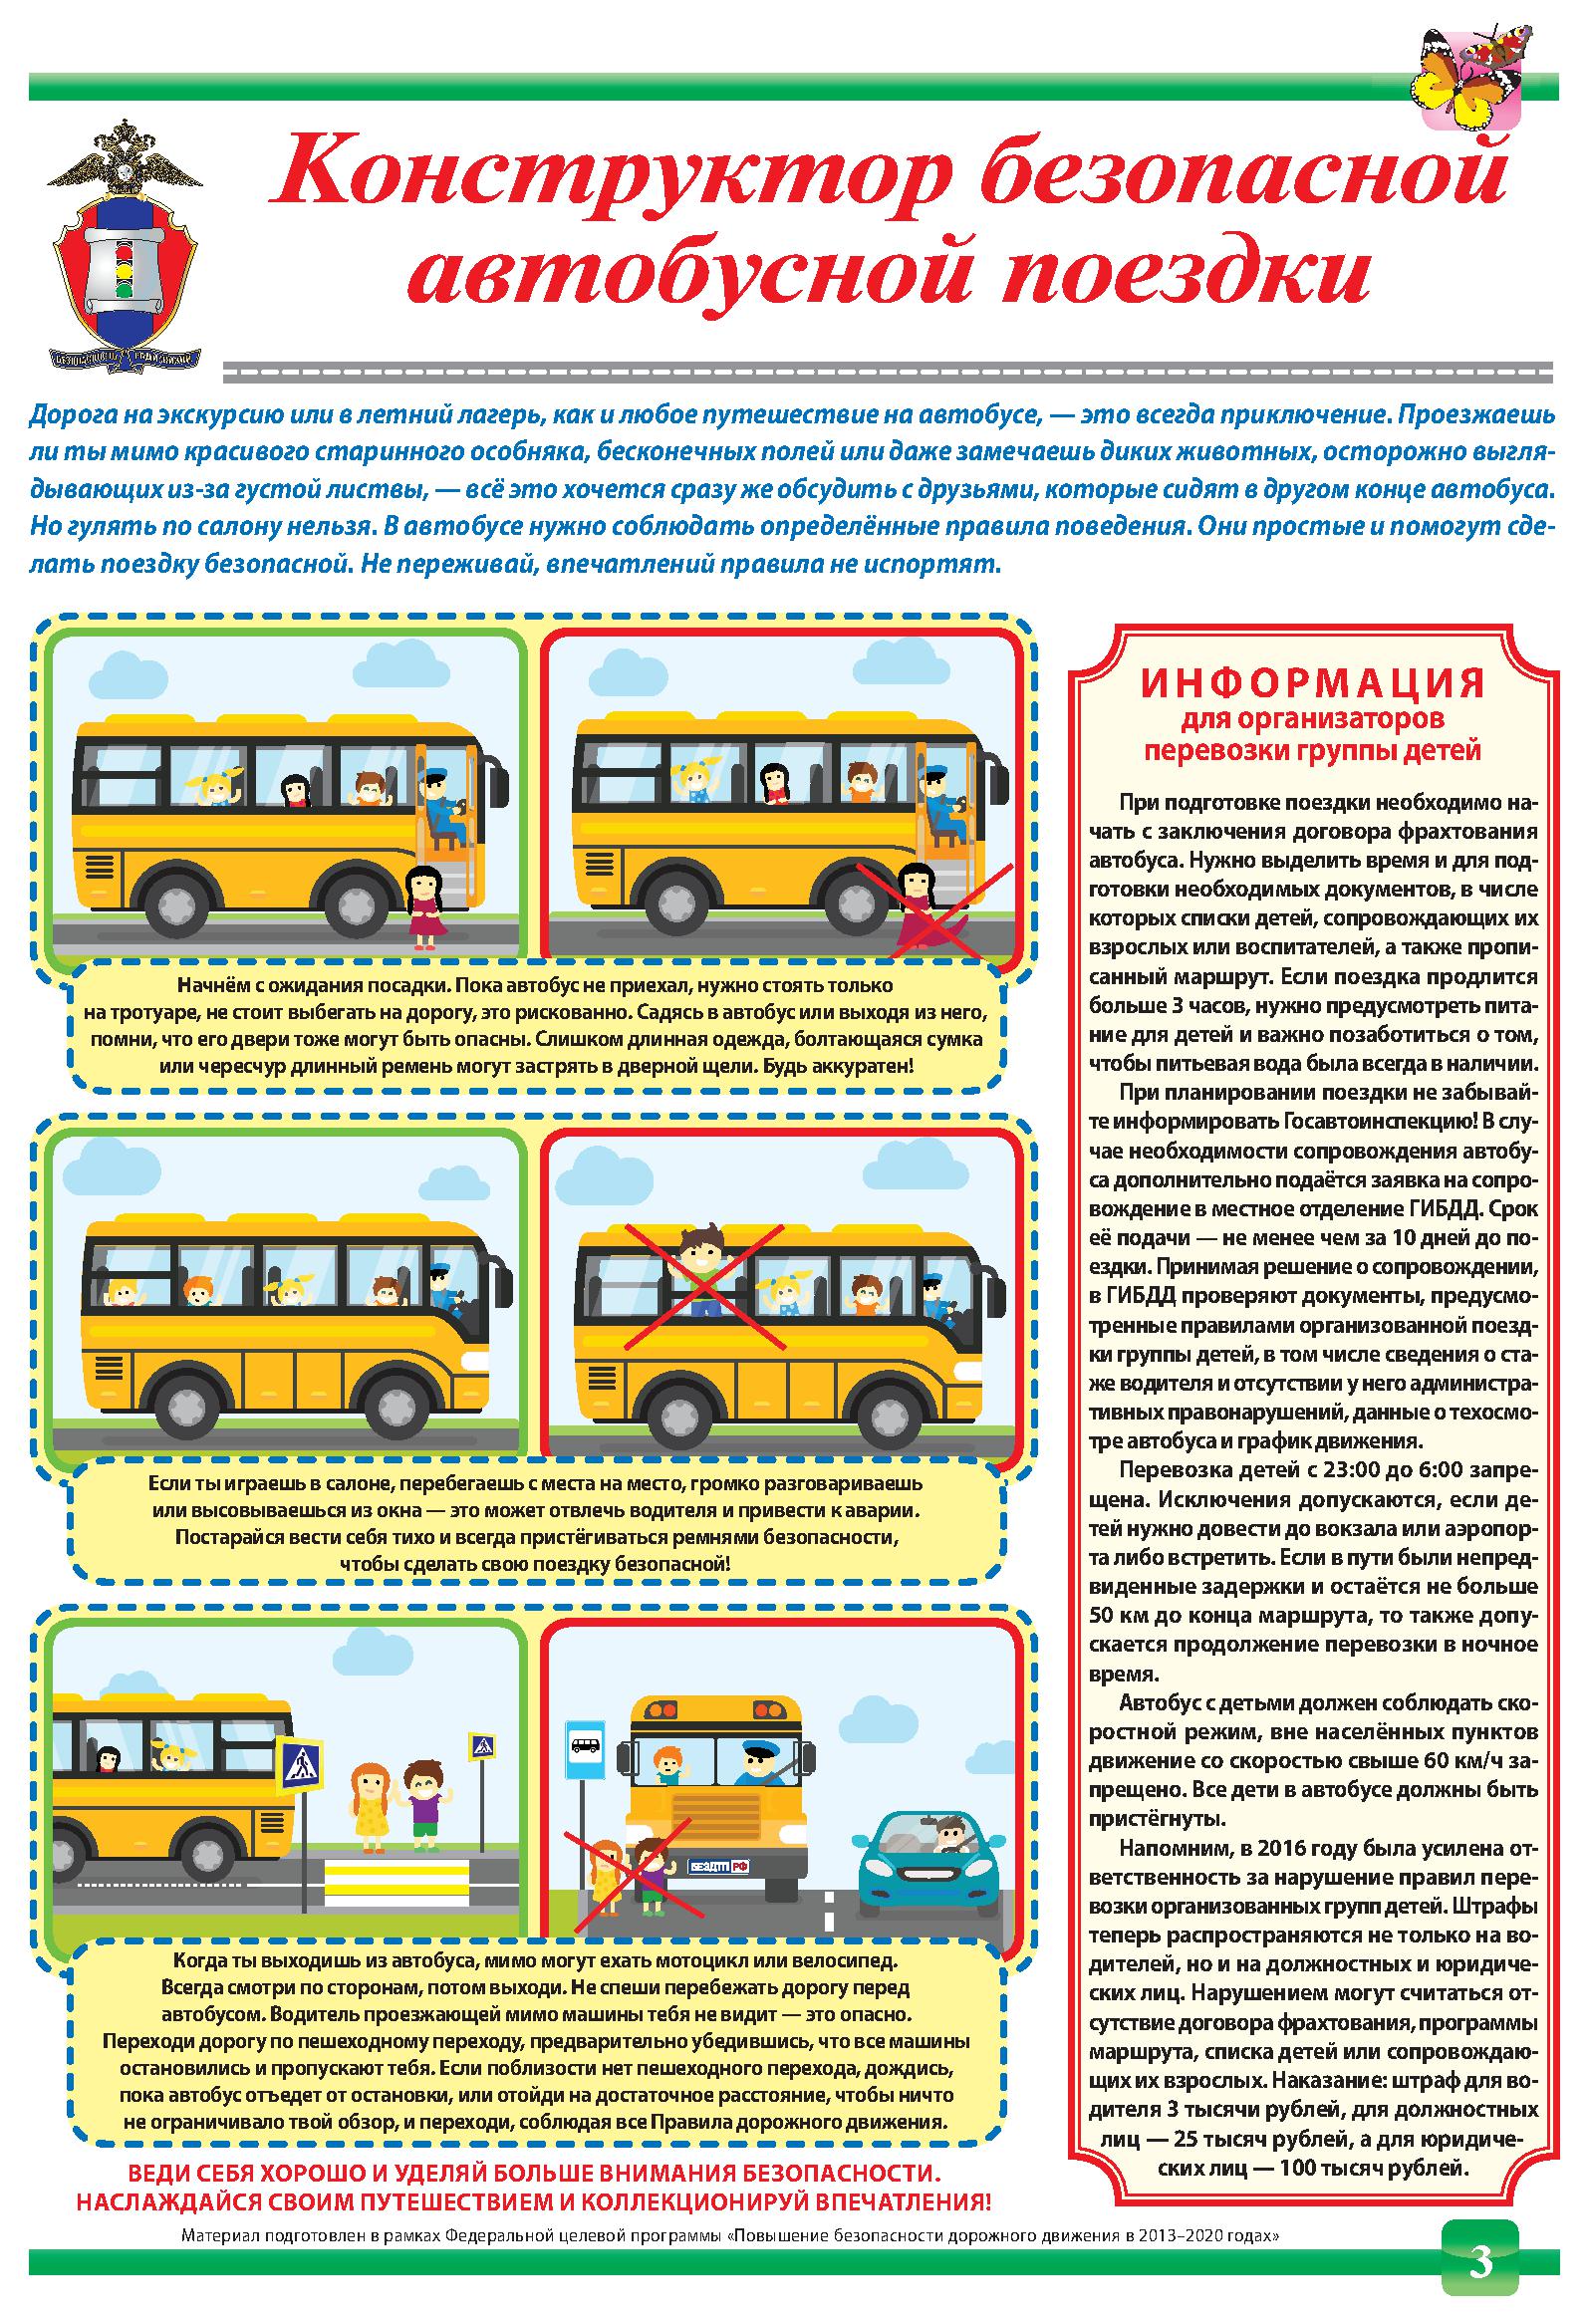 Документы общественного транспорта. Правила перевозки детей в школьном автобусе. Правила безопасности при перевозке детей. Безопасность в общественном транспорте. Безопасность в автобусе для детей.